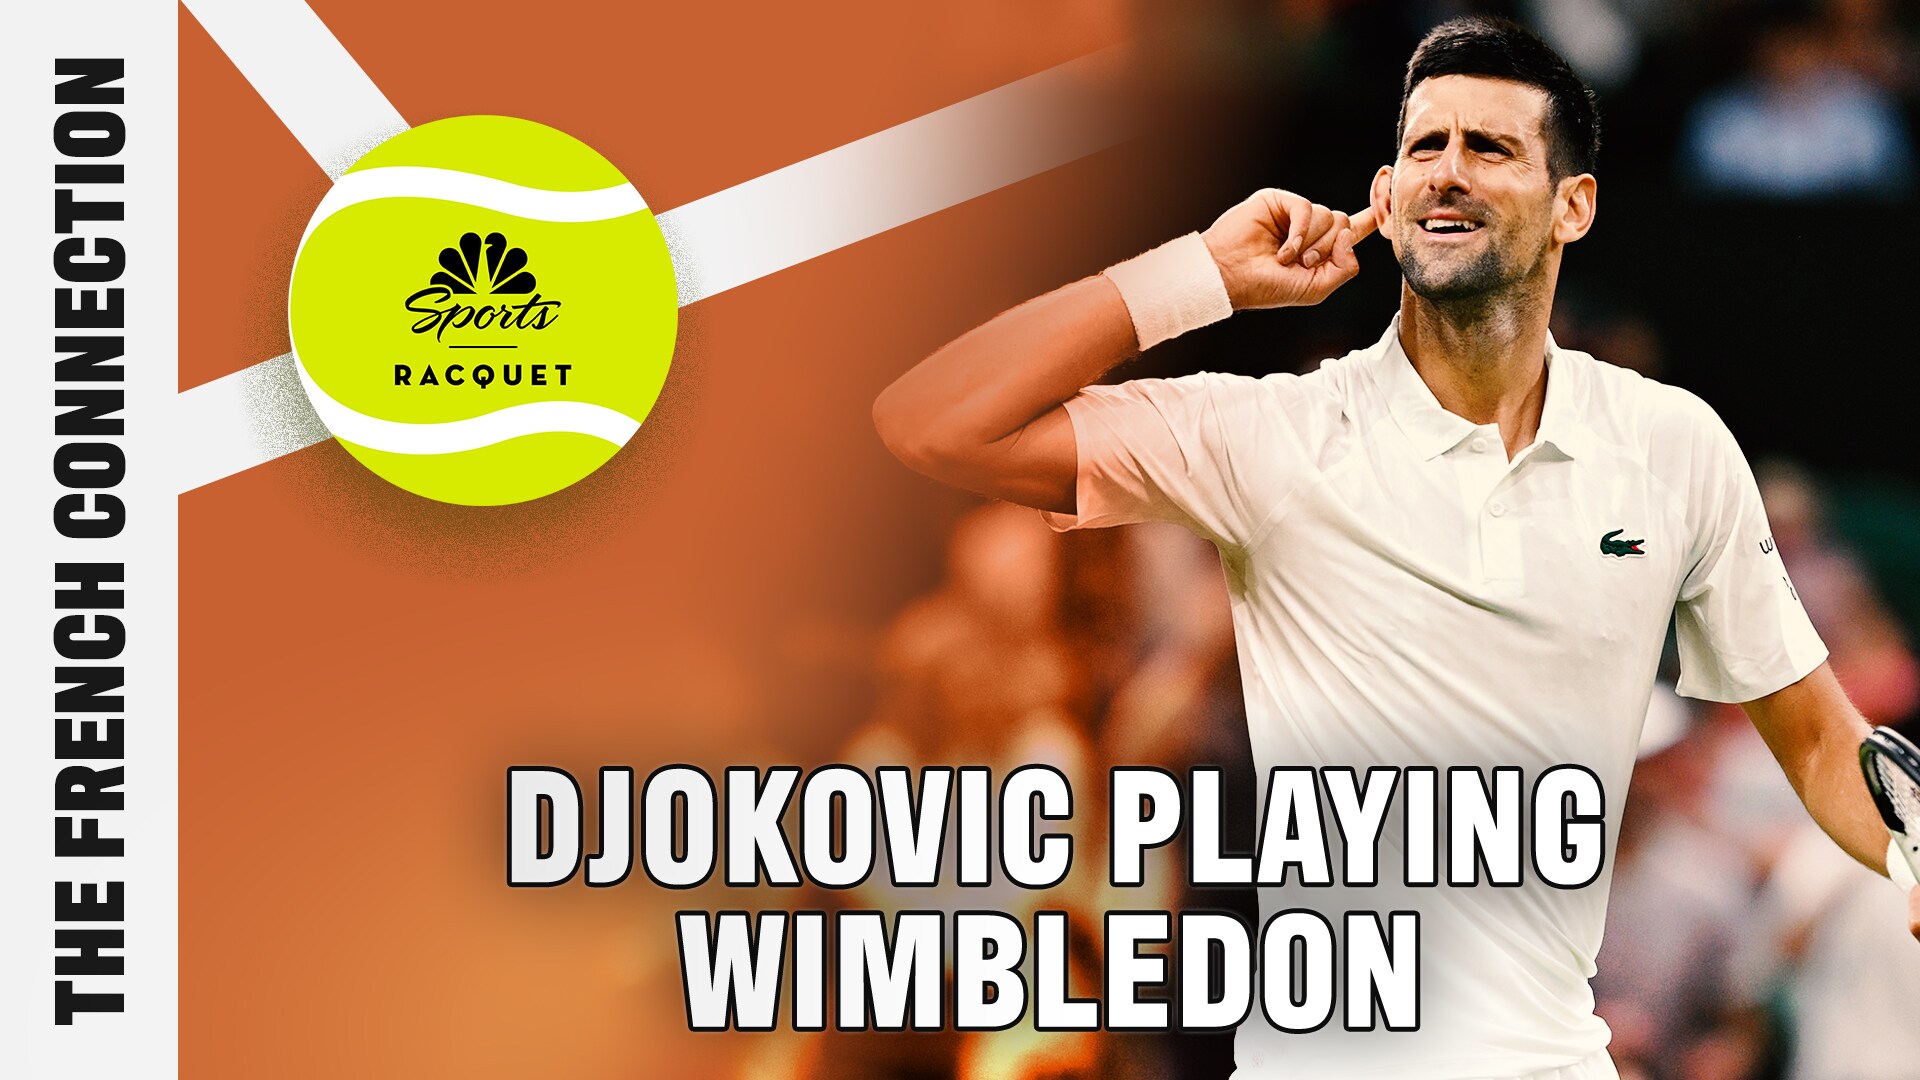 Novak Djokovic set to play Wimbledon after knee surgery [Video]